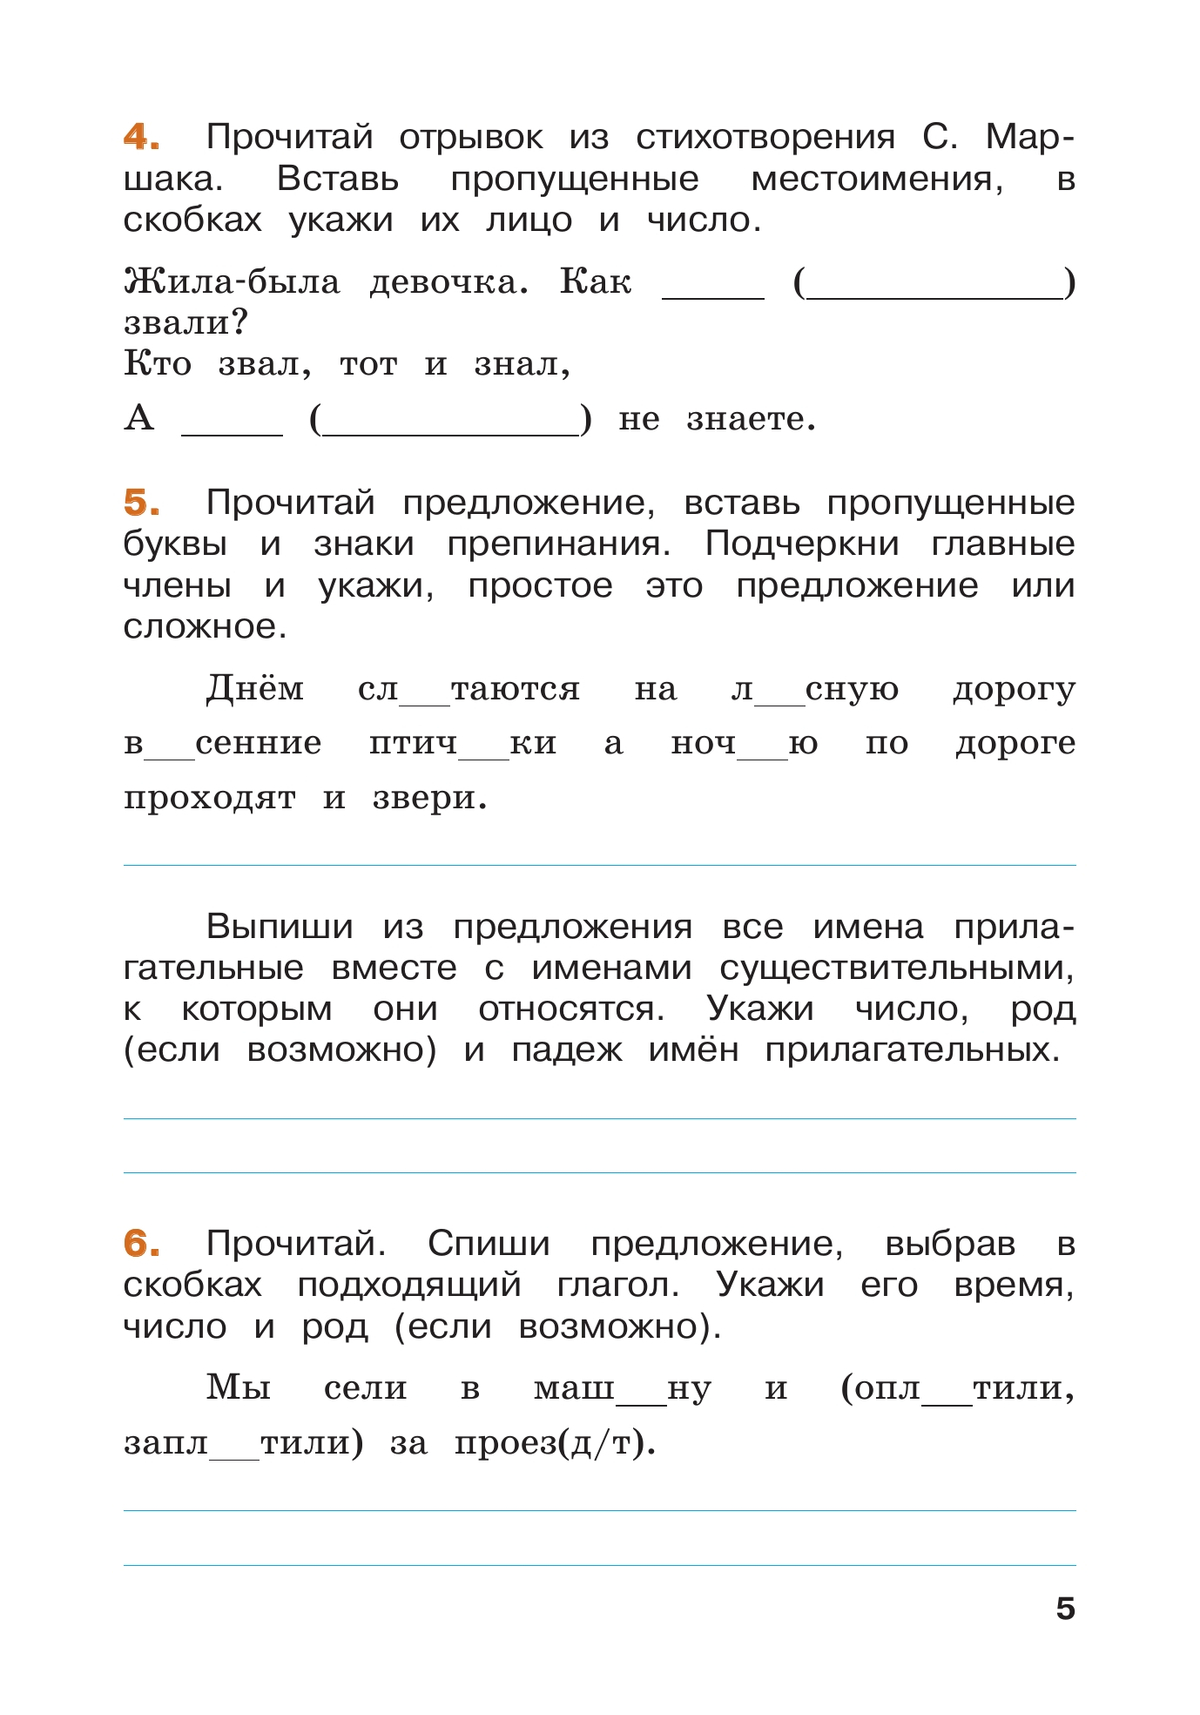 Русский язык. Летние задания. Переходим в 4-й класс 10